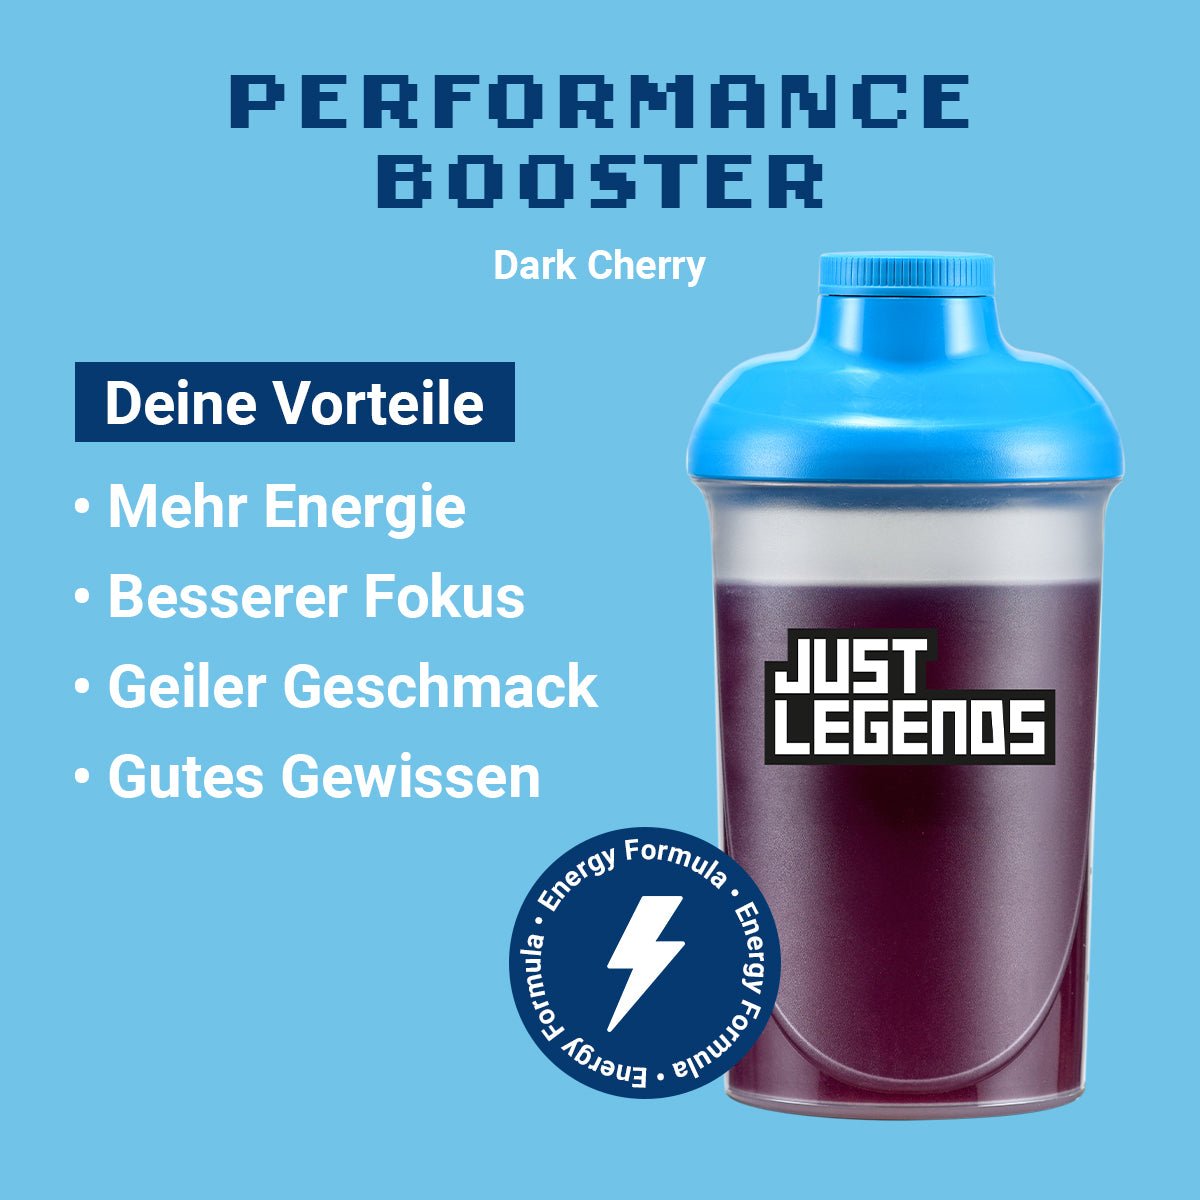 Just Legends Performance Booster Dark Cherry | Funktionaler, veganer Performance Booster auf Pulverbasis ohne Zucker, mit wenig Kalorien, vielen Vitaminen und natürlichen Aromen.